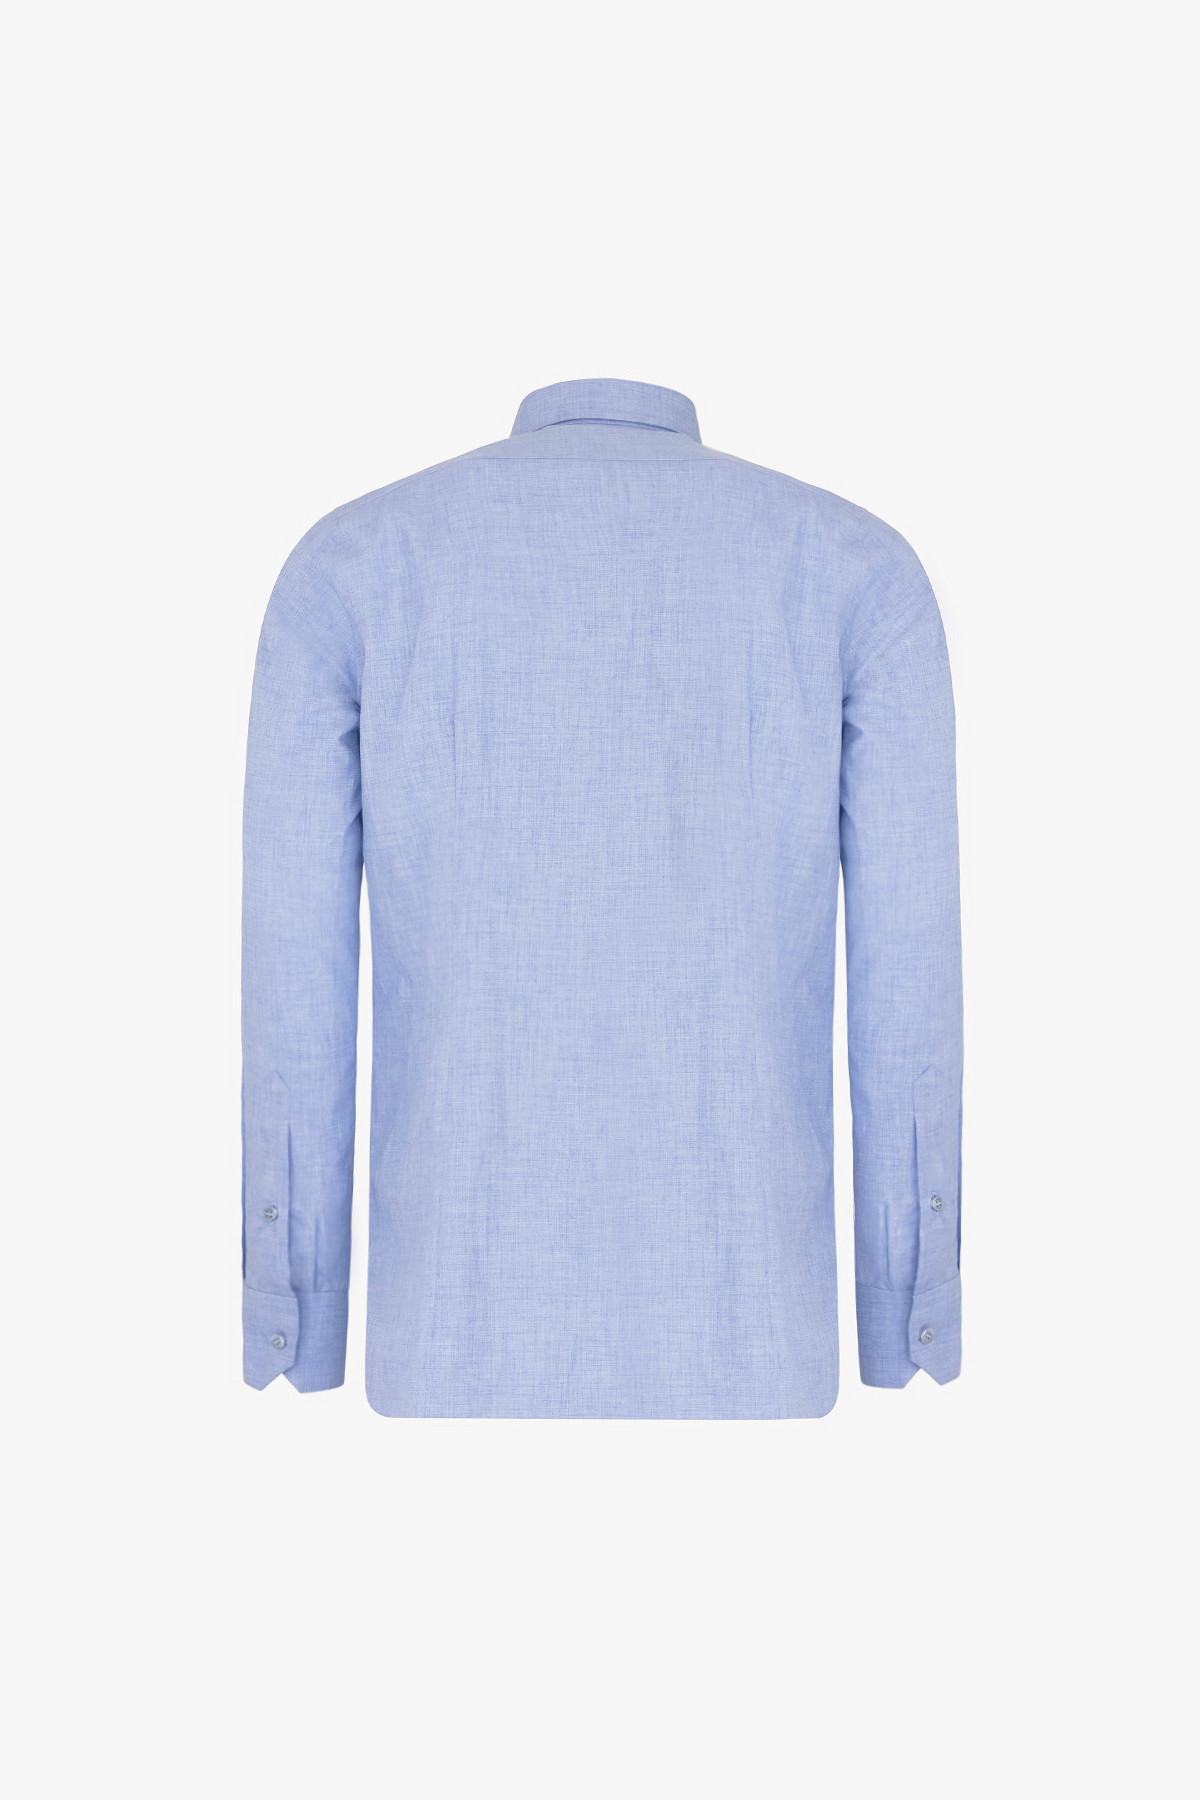 Sky-blue shirt, mottled finish